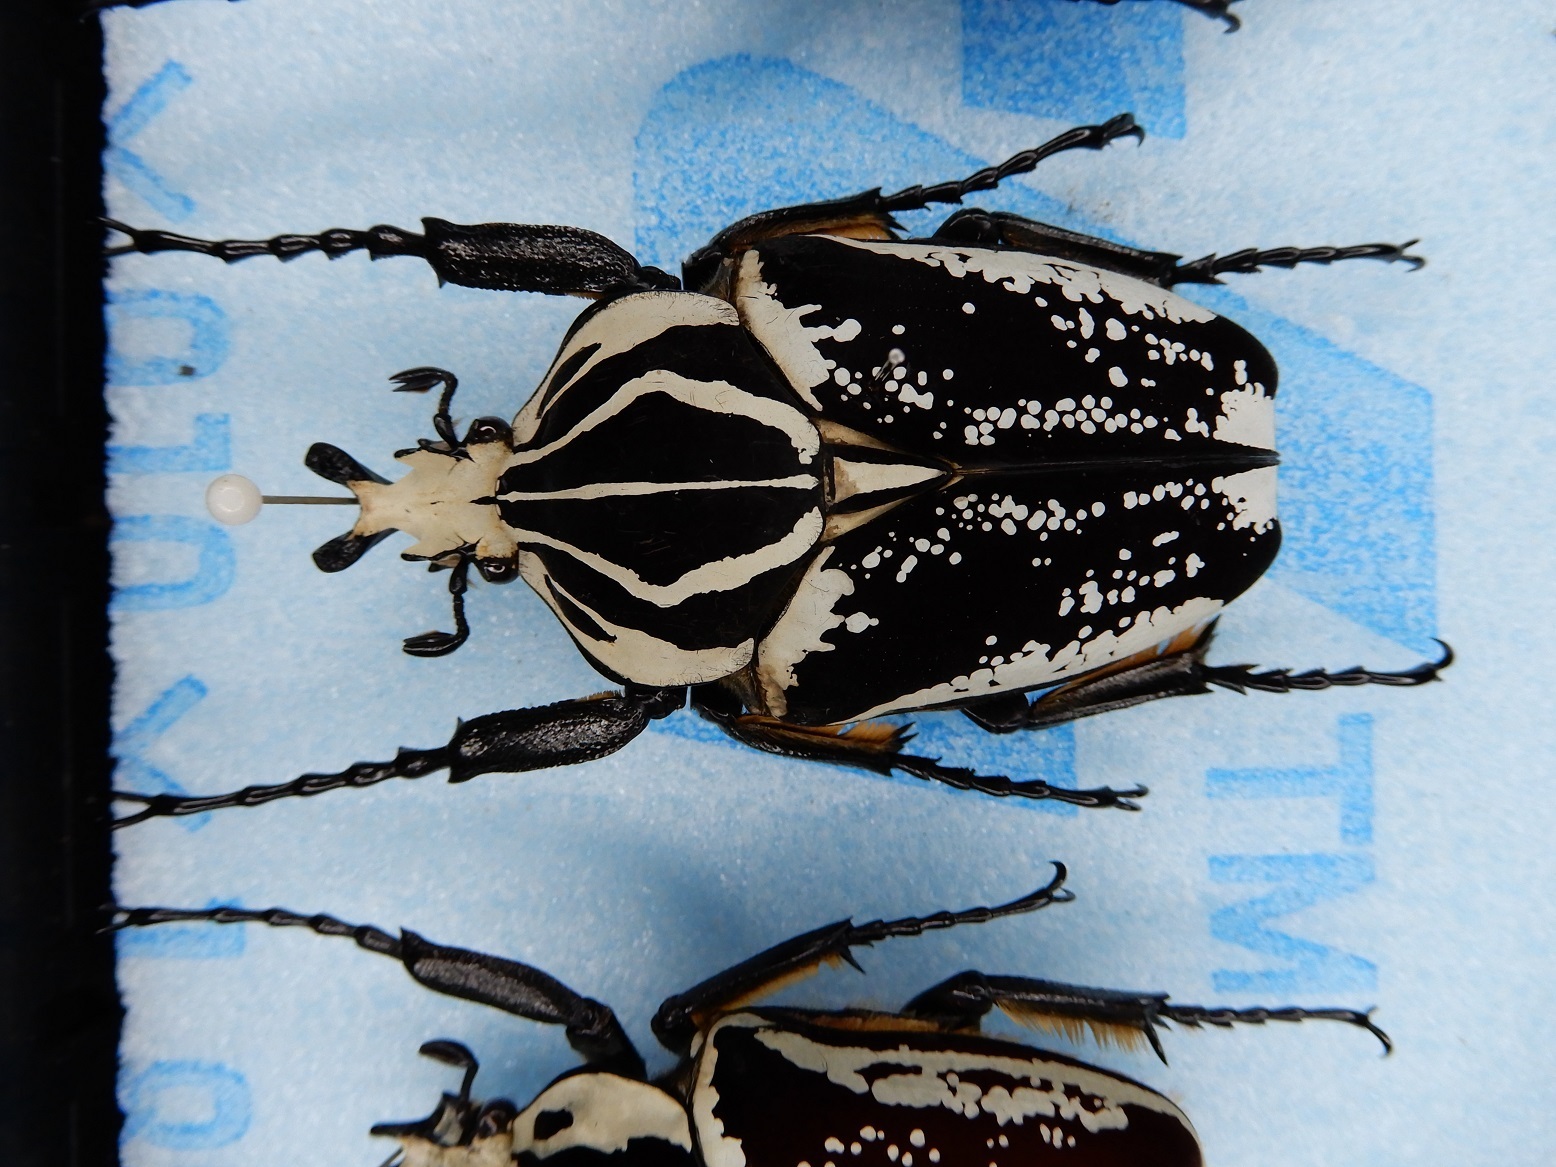 ゴライアスオオツノハナムグリ 昆虫標本 剥製 - 虫類用品